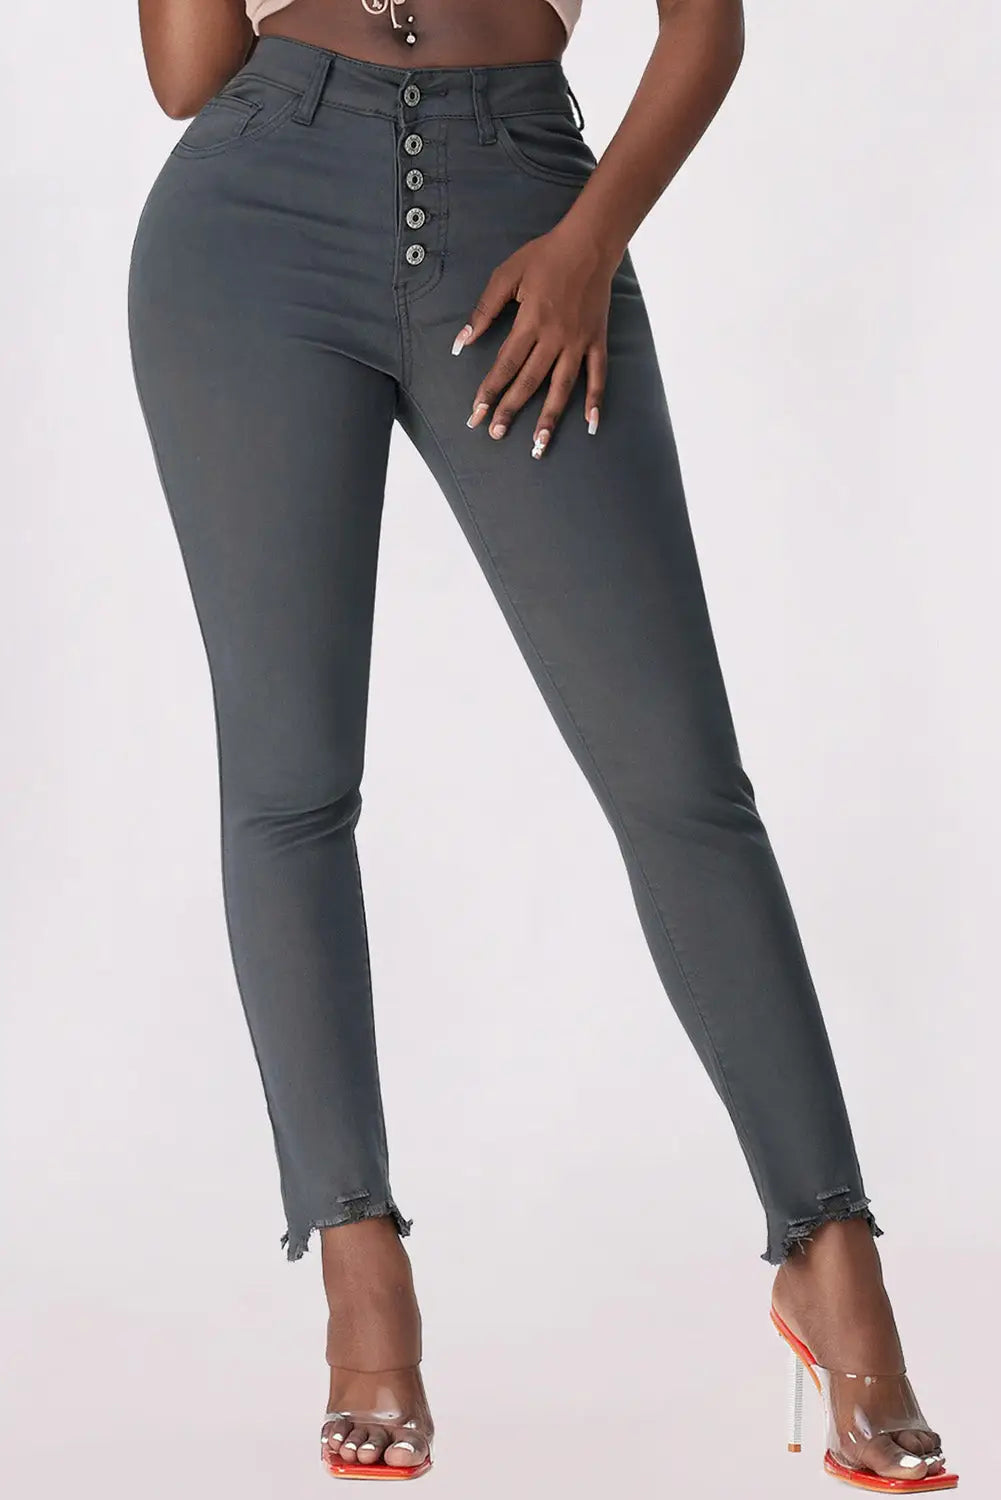 Green plain high waist buttons frayed cropped denim jeans - gray / 4 98% cotton + 2% elastane